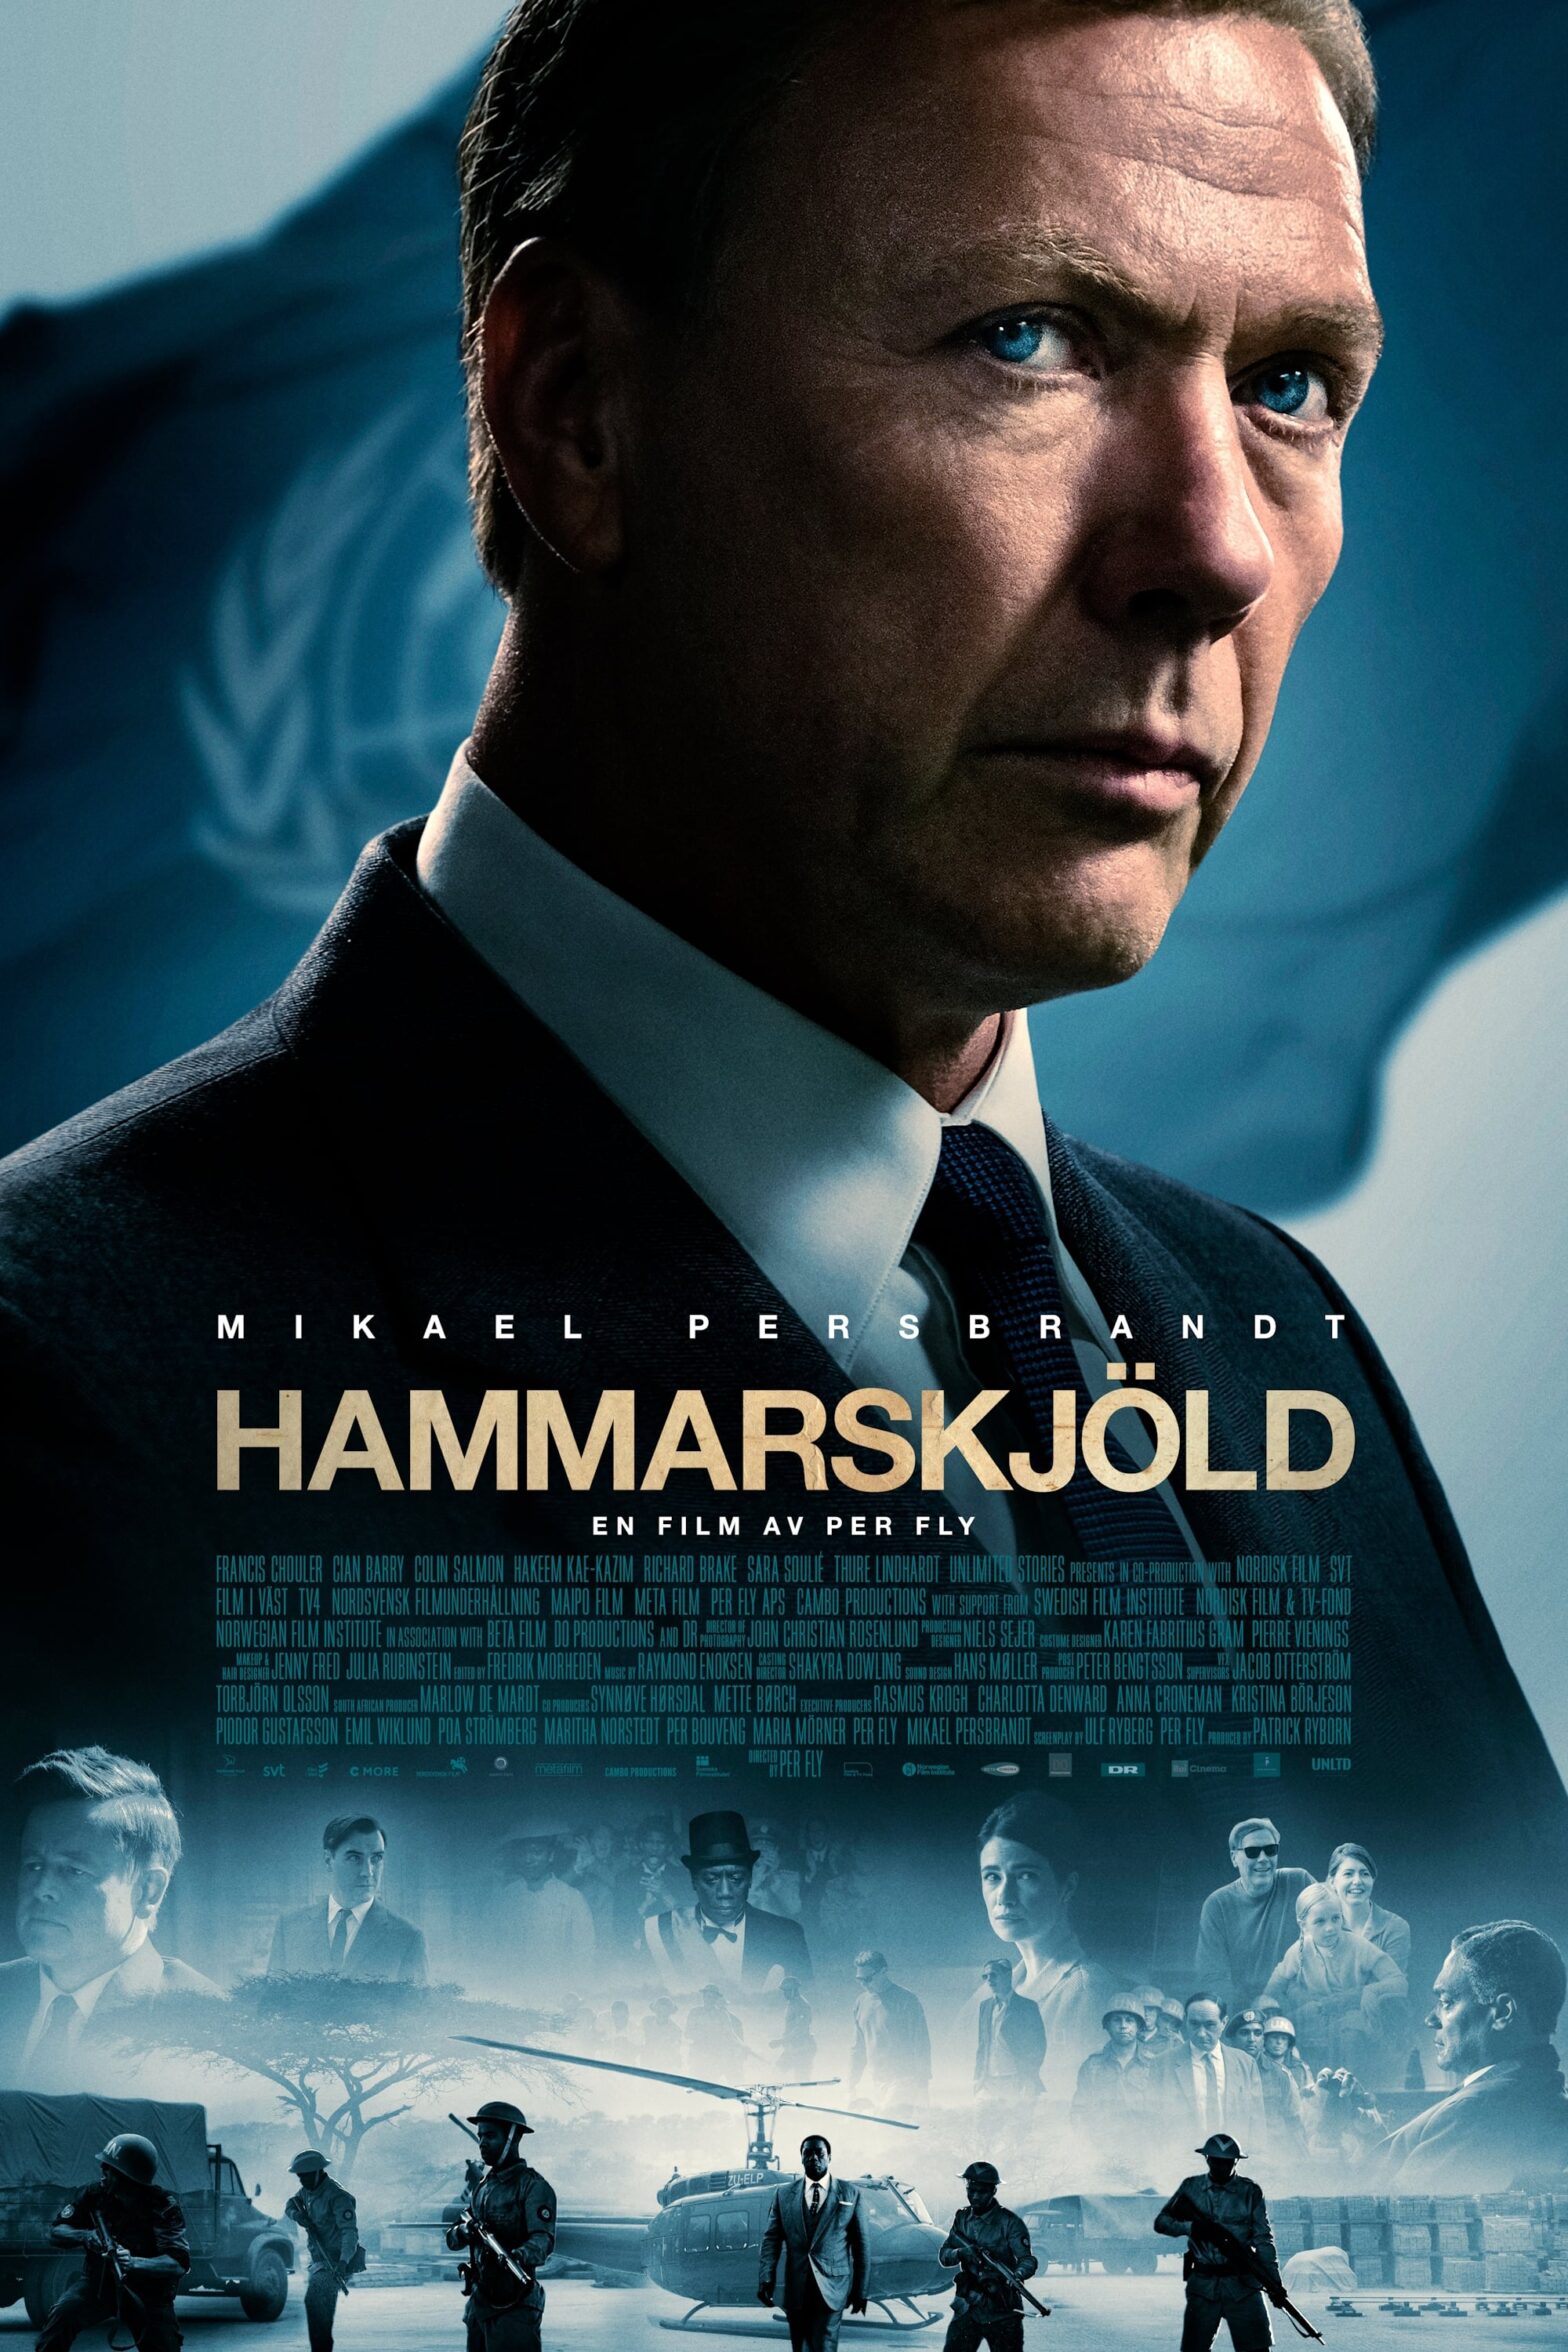 Poster for the movie "Hammarskjöld"